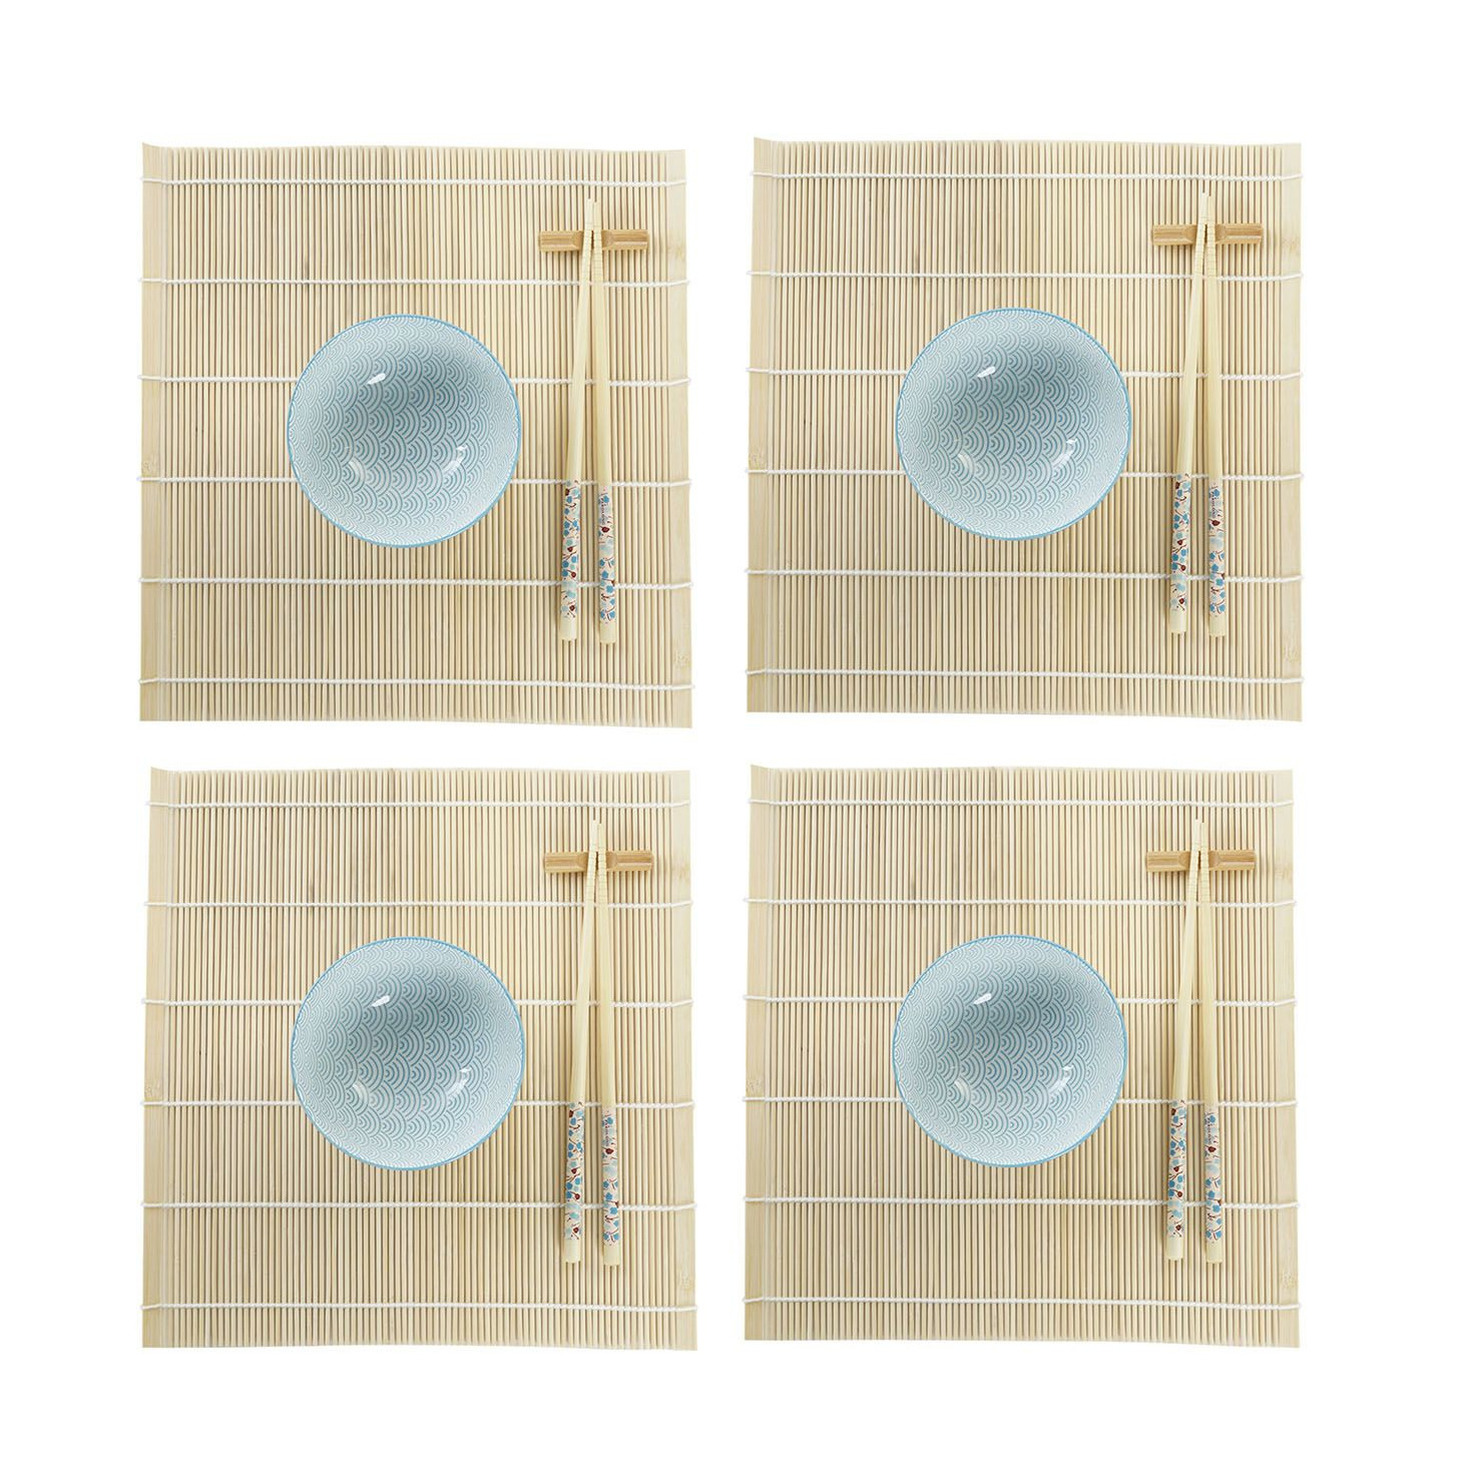 Items 16-delige sushi serveer set aardewerk voor 4 personen licht blauw/wit -